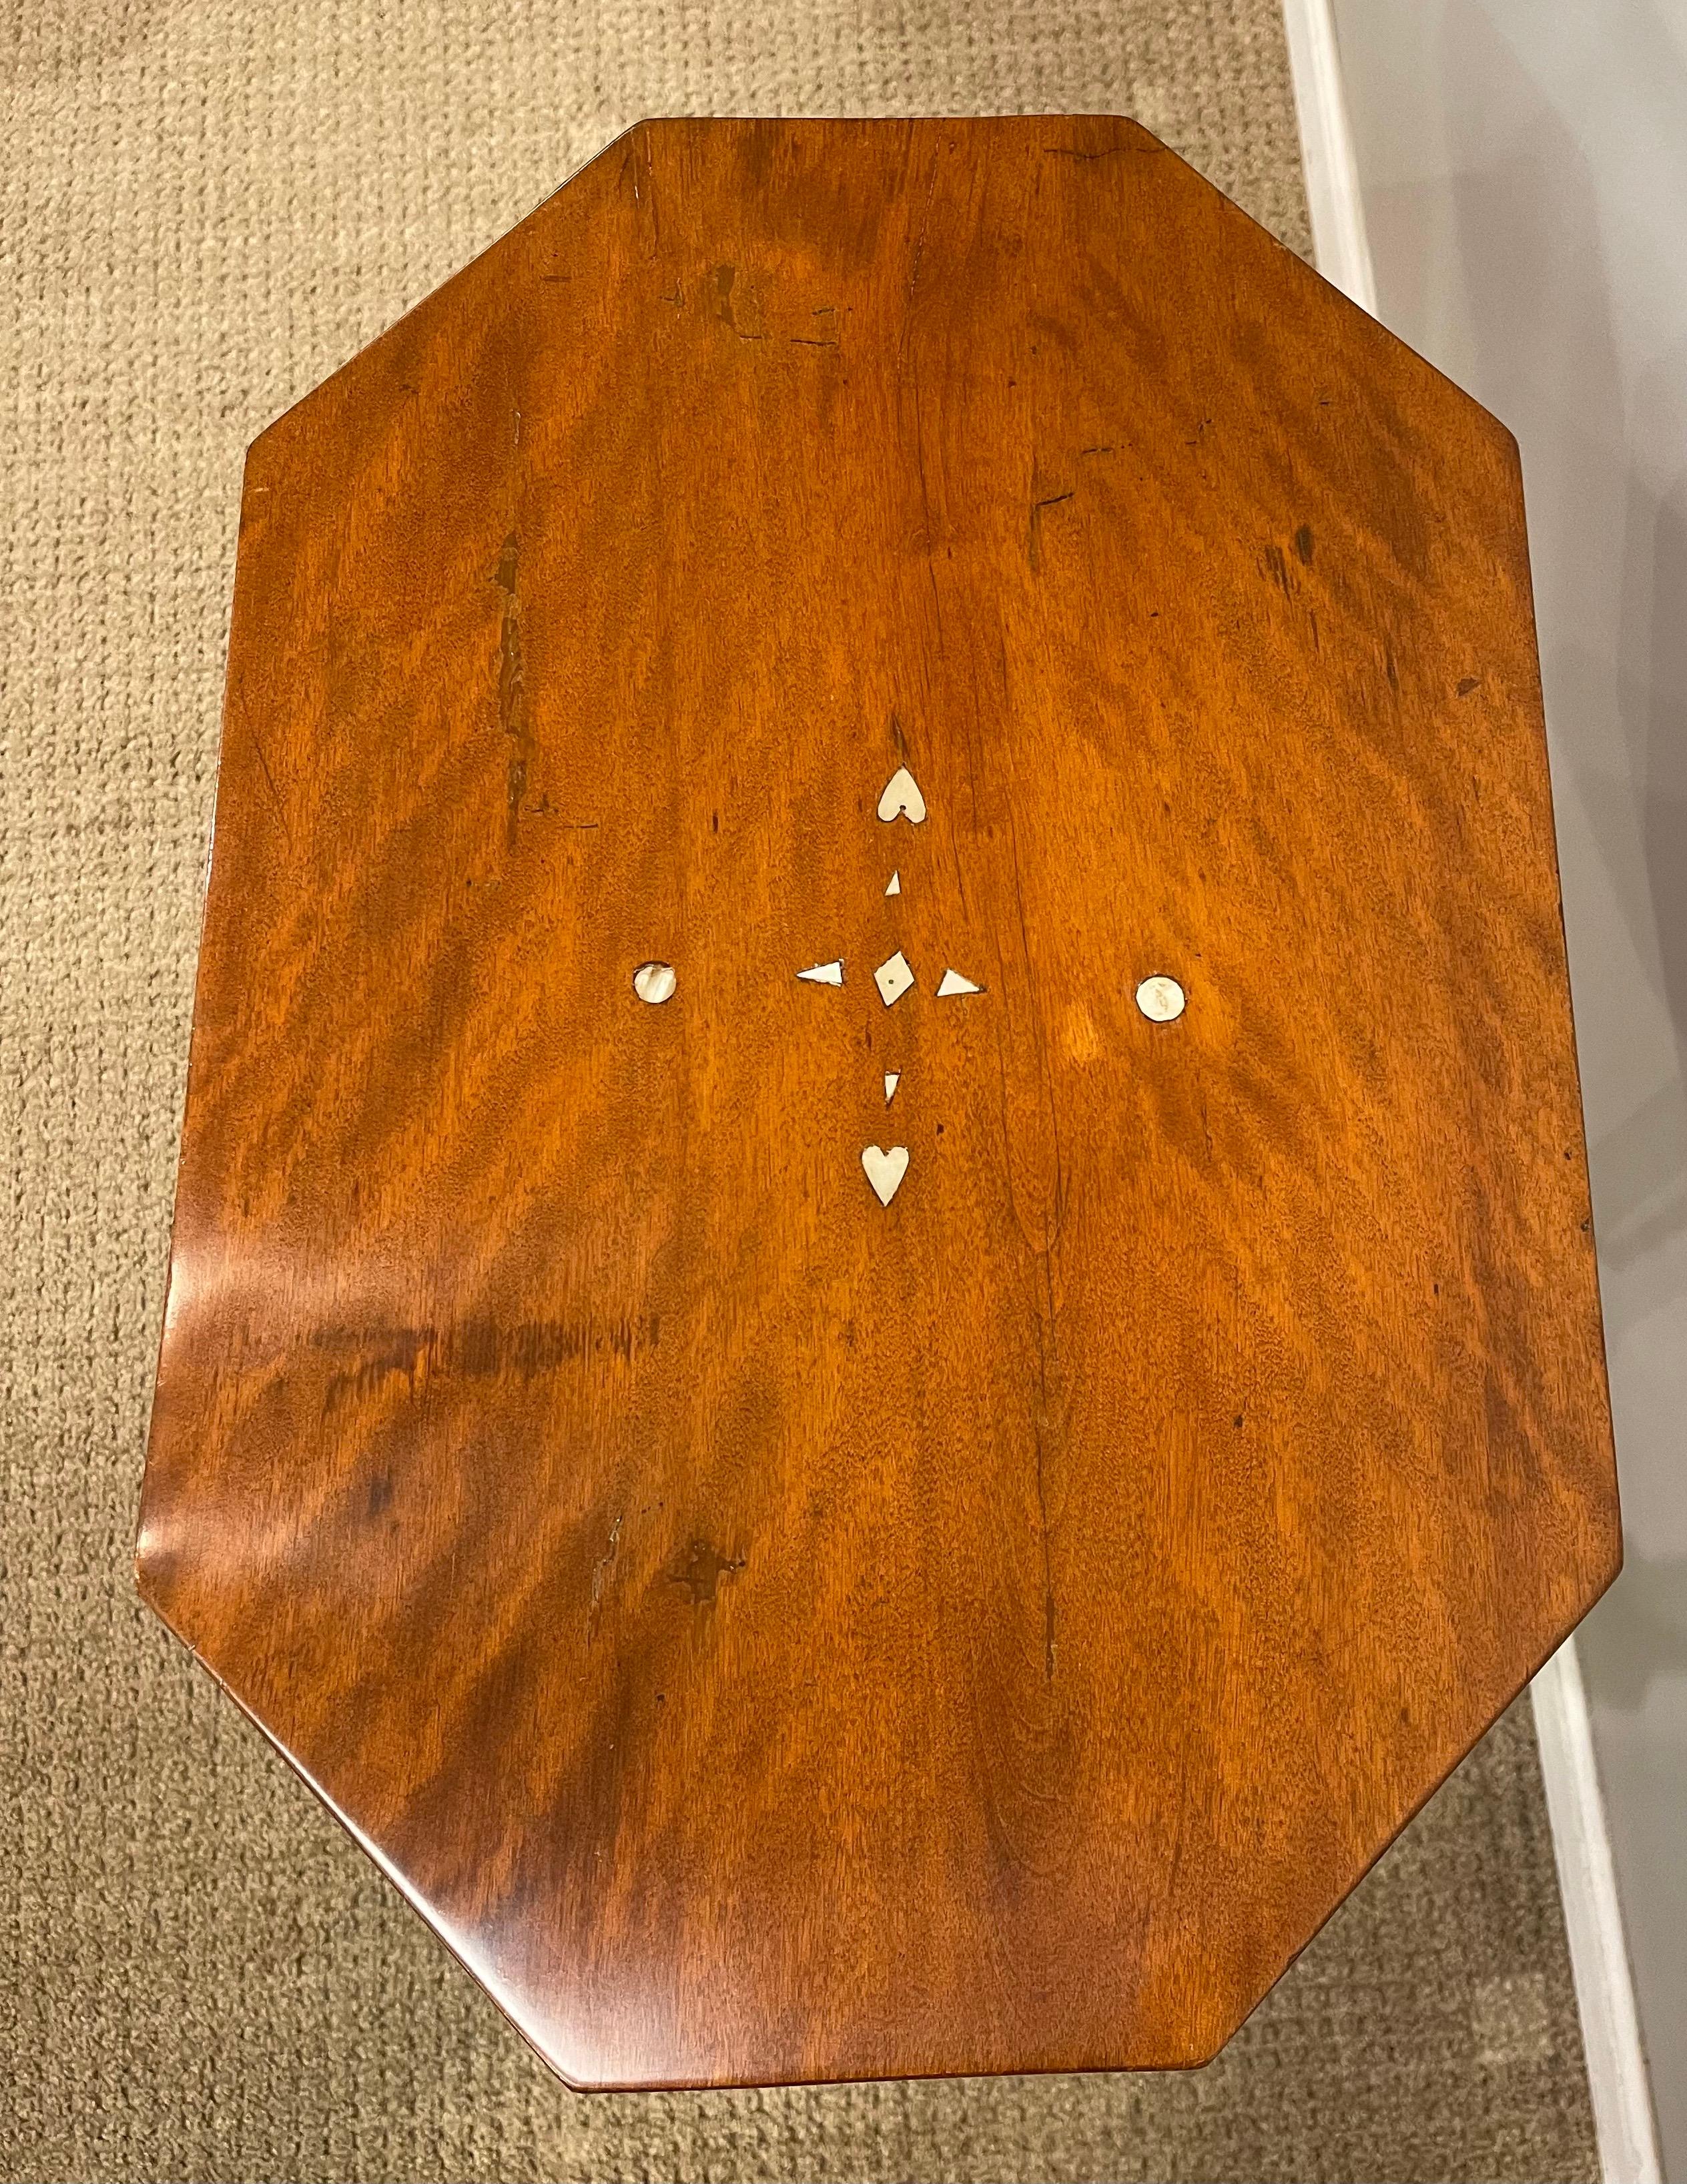 Tiger Maple Tripod Tisch, Platte mit abgeschrägten Ecken auch mit Intarsien aus Perlmutt, Kreisen, Herzen und Dreiecken. Gedrechseltes Gestell auf nach unten geschwungenen Beinen, die in Spatenfüßen enden.